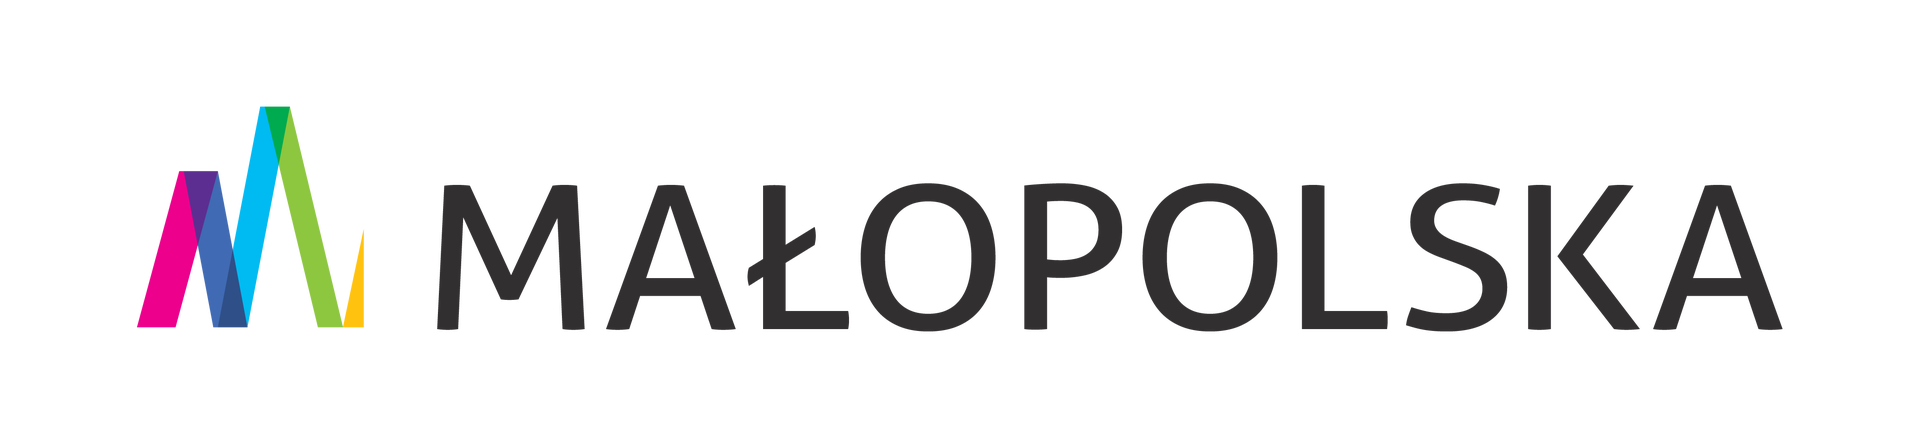 logo-malopolska-h-rgb.png